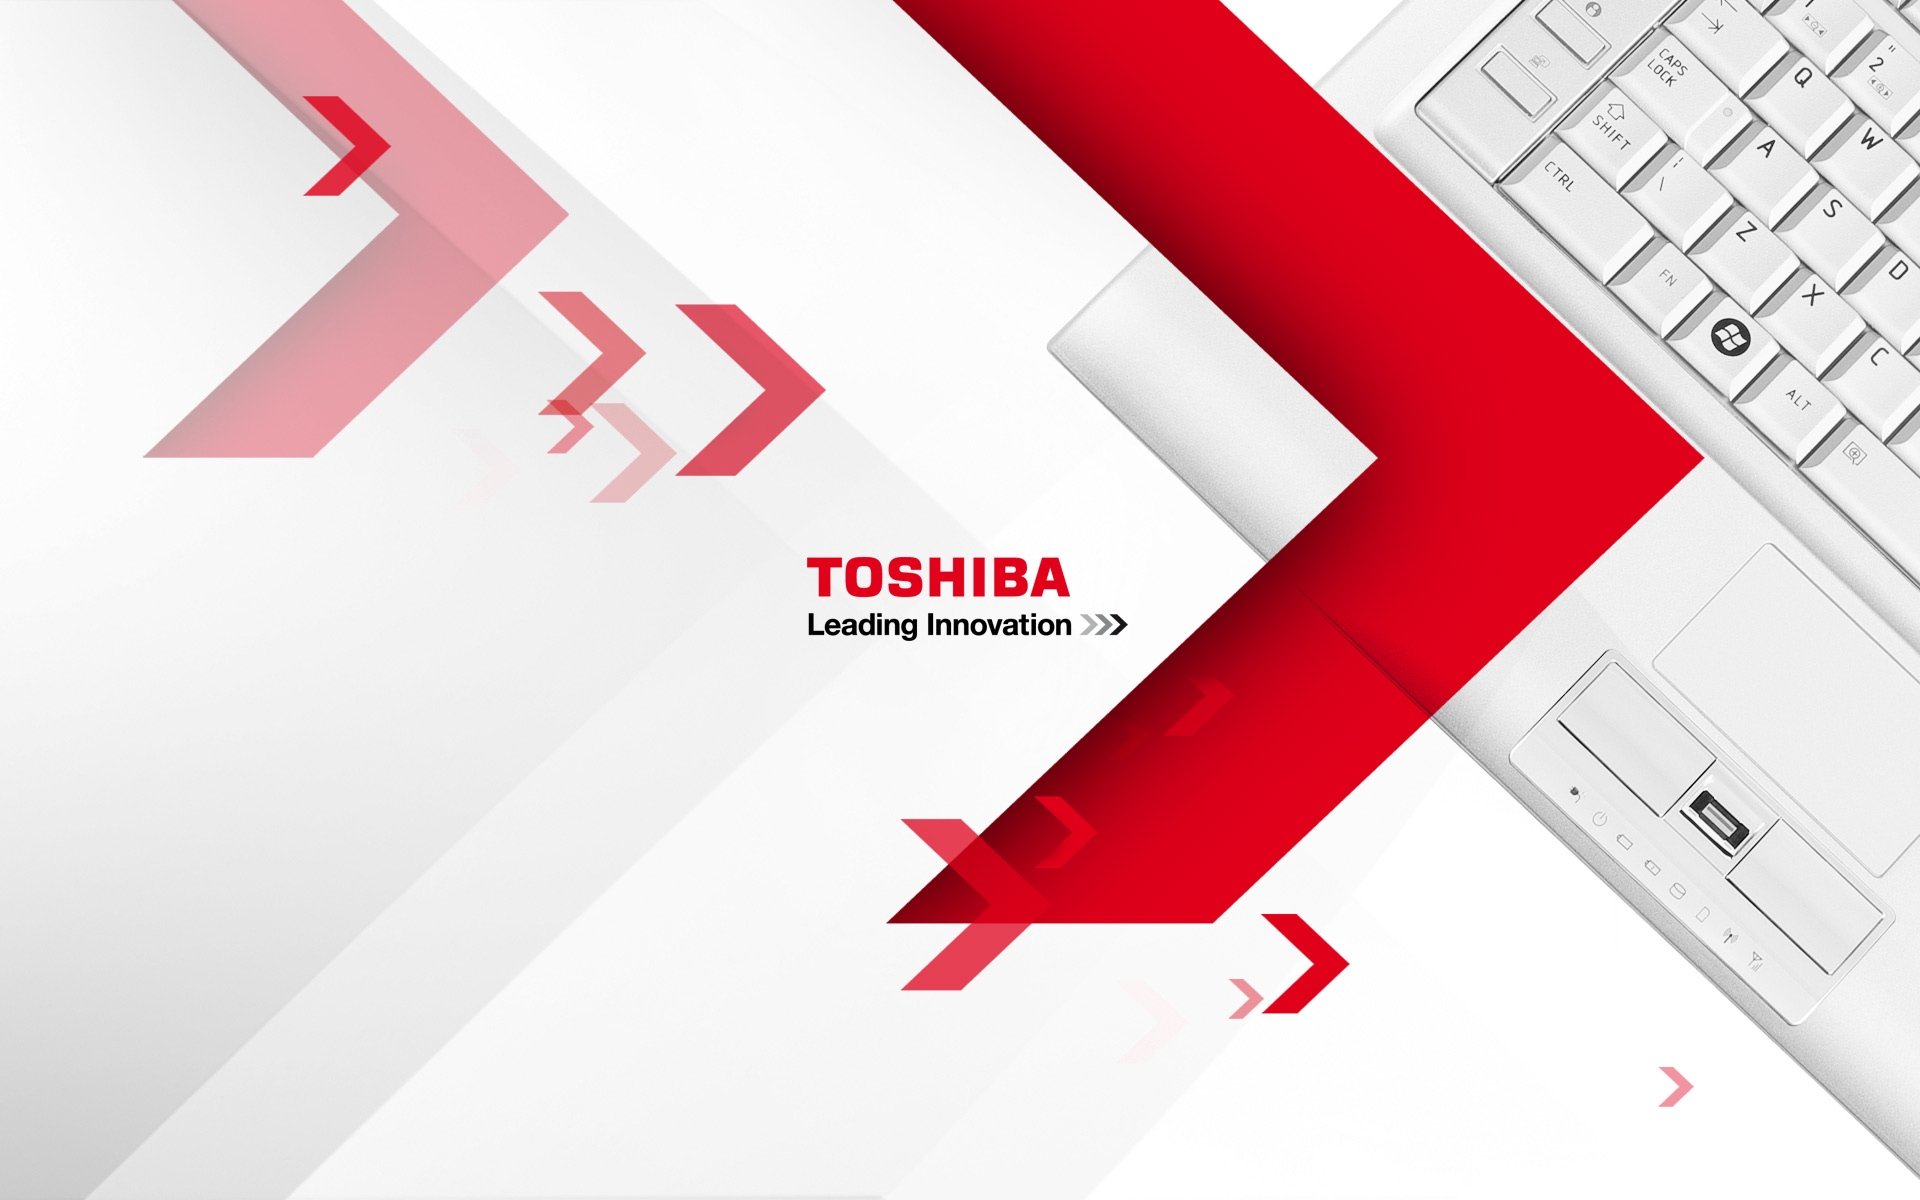 Toshiba bjuder formellt Adieu till marknaden för bärbara datorer